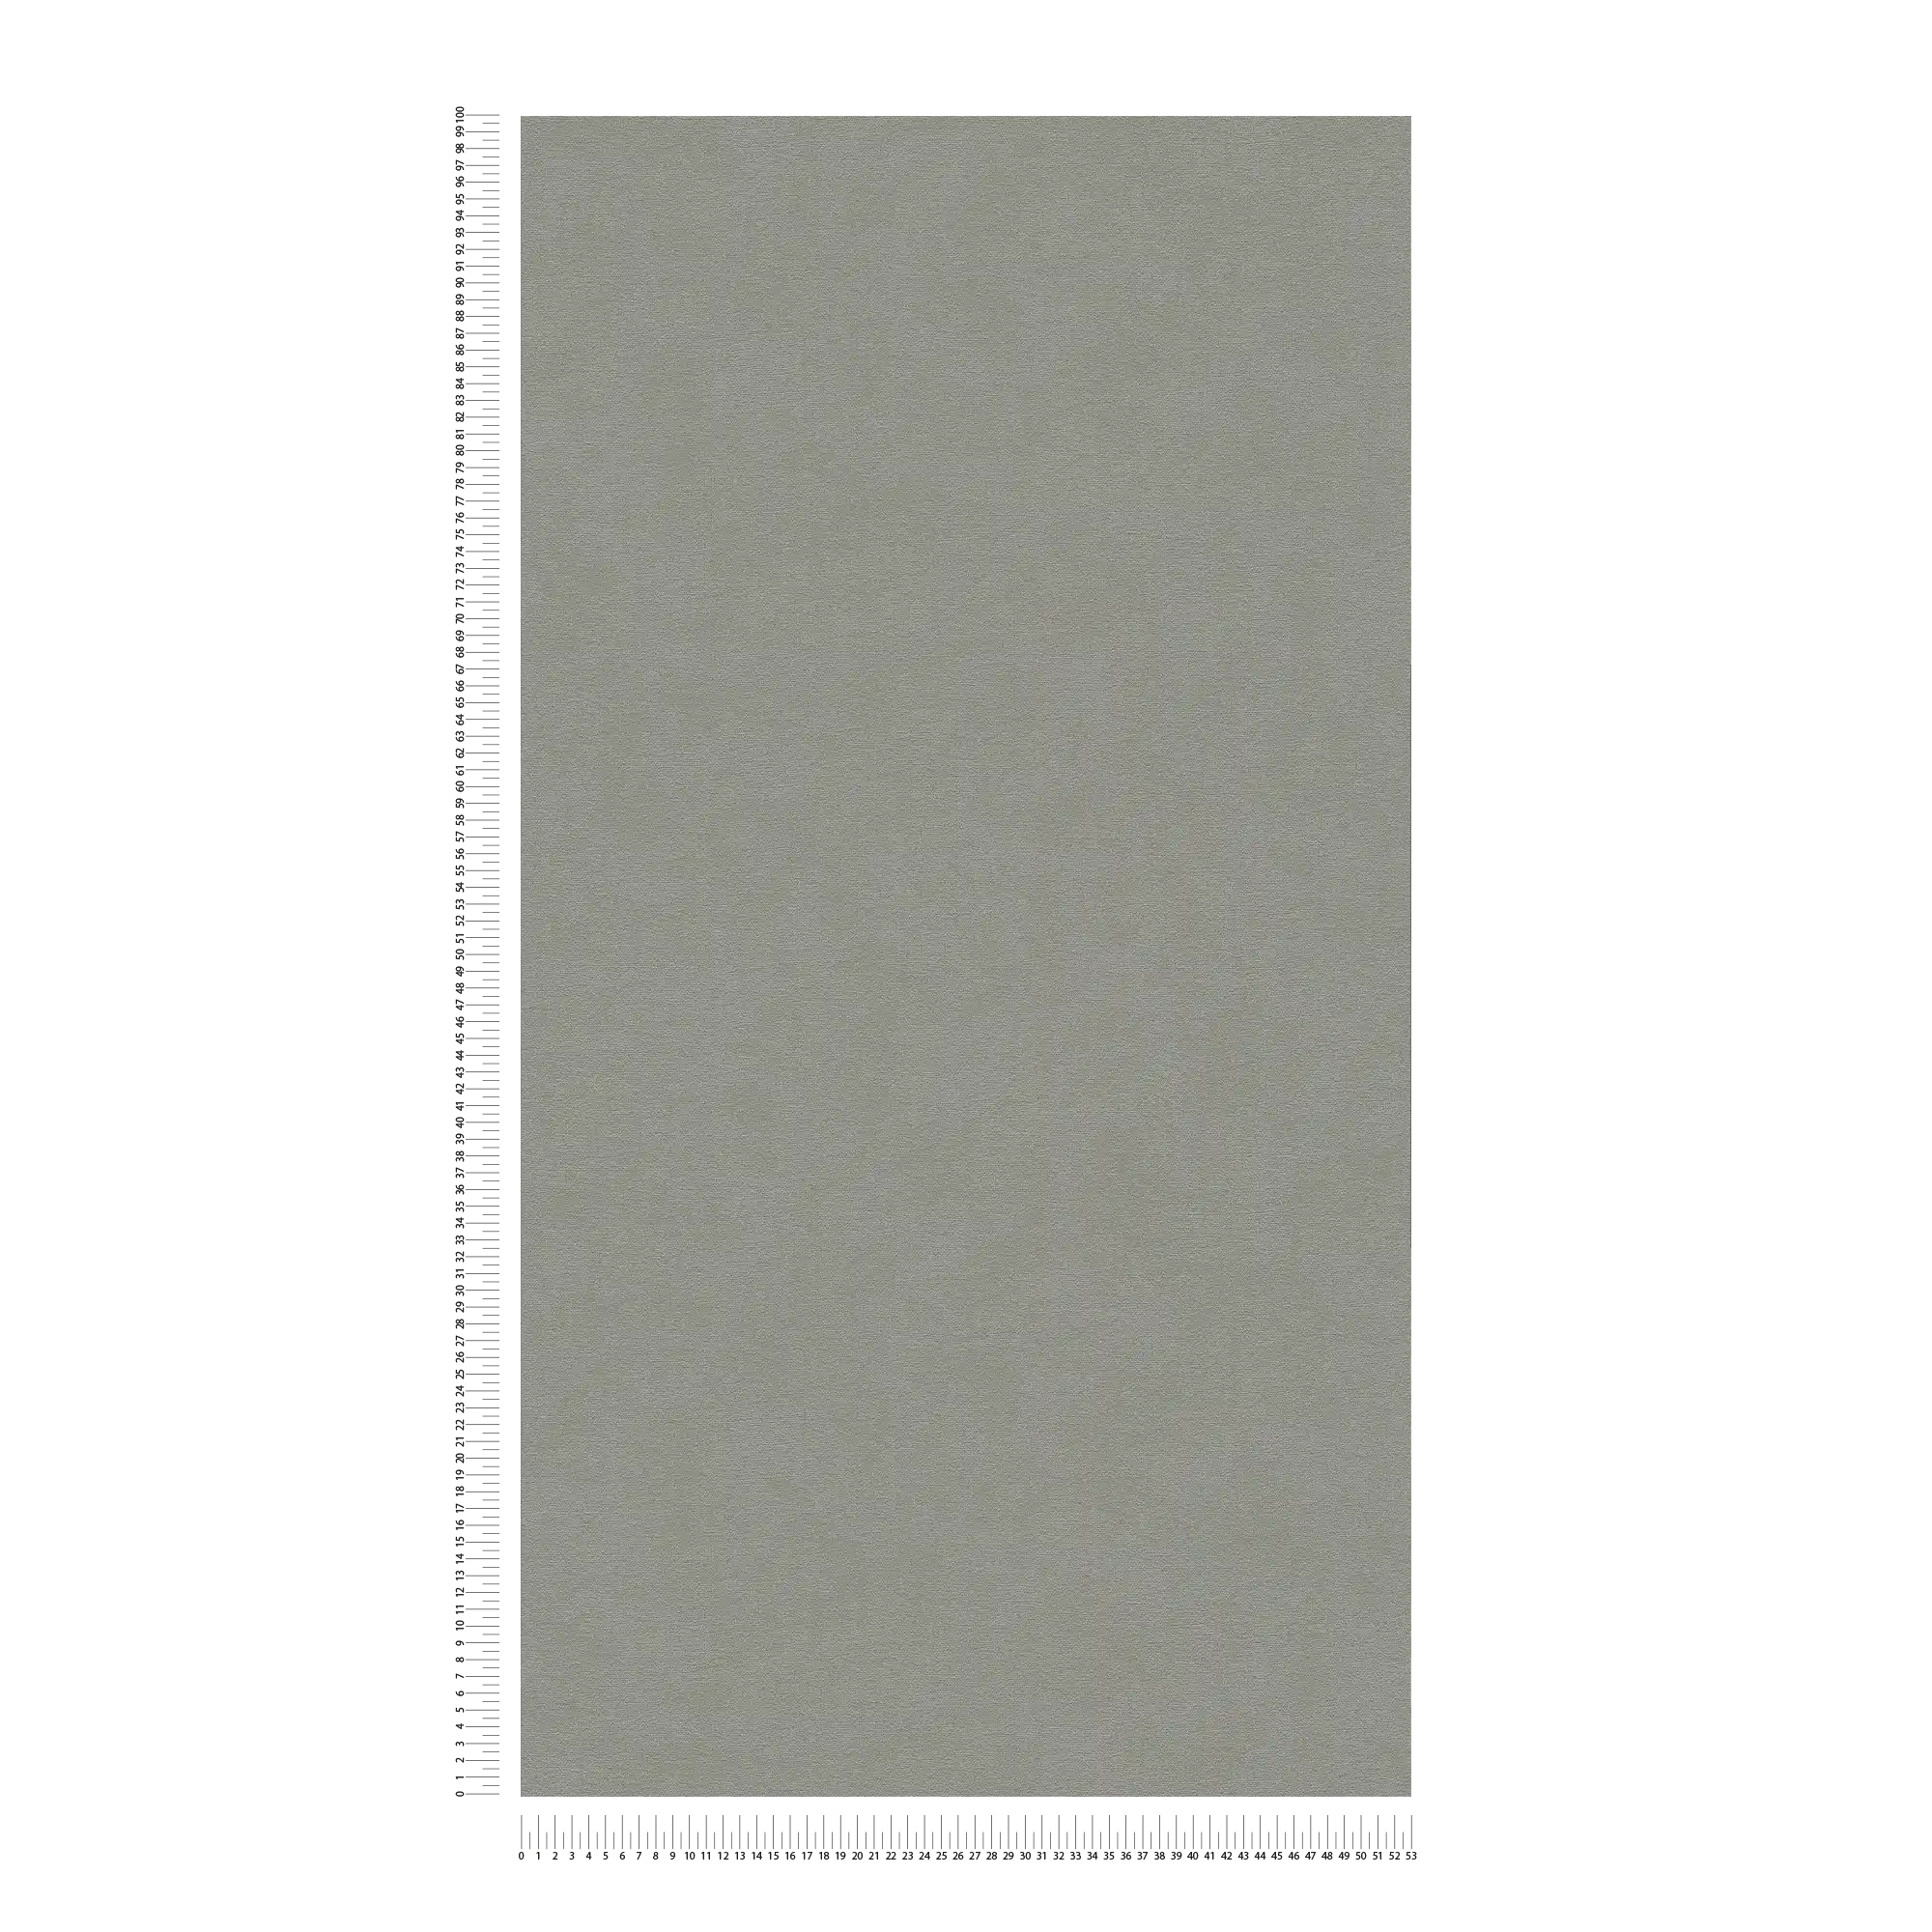             Vliestapete einfarbig Oberfläche fein strukturiert – Grau
        